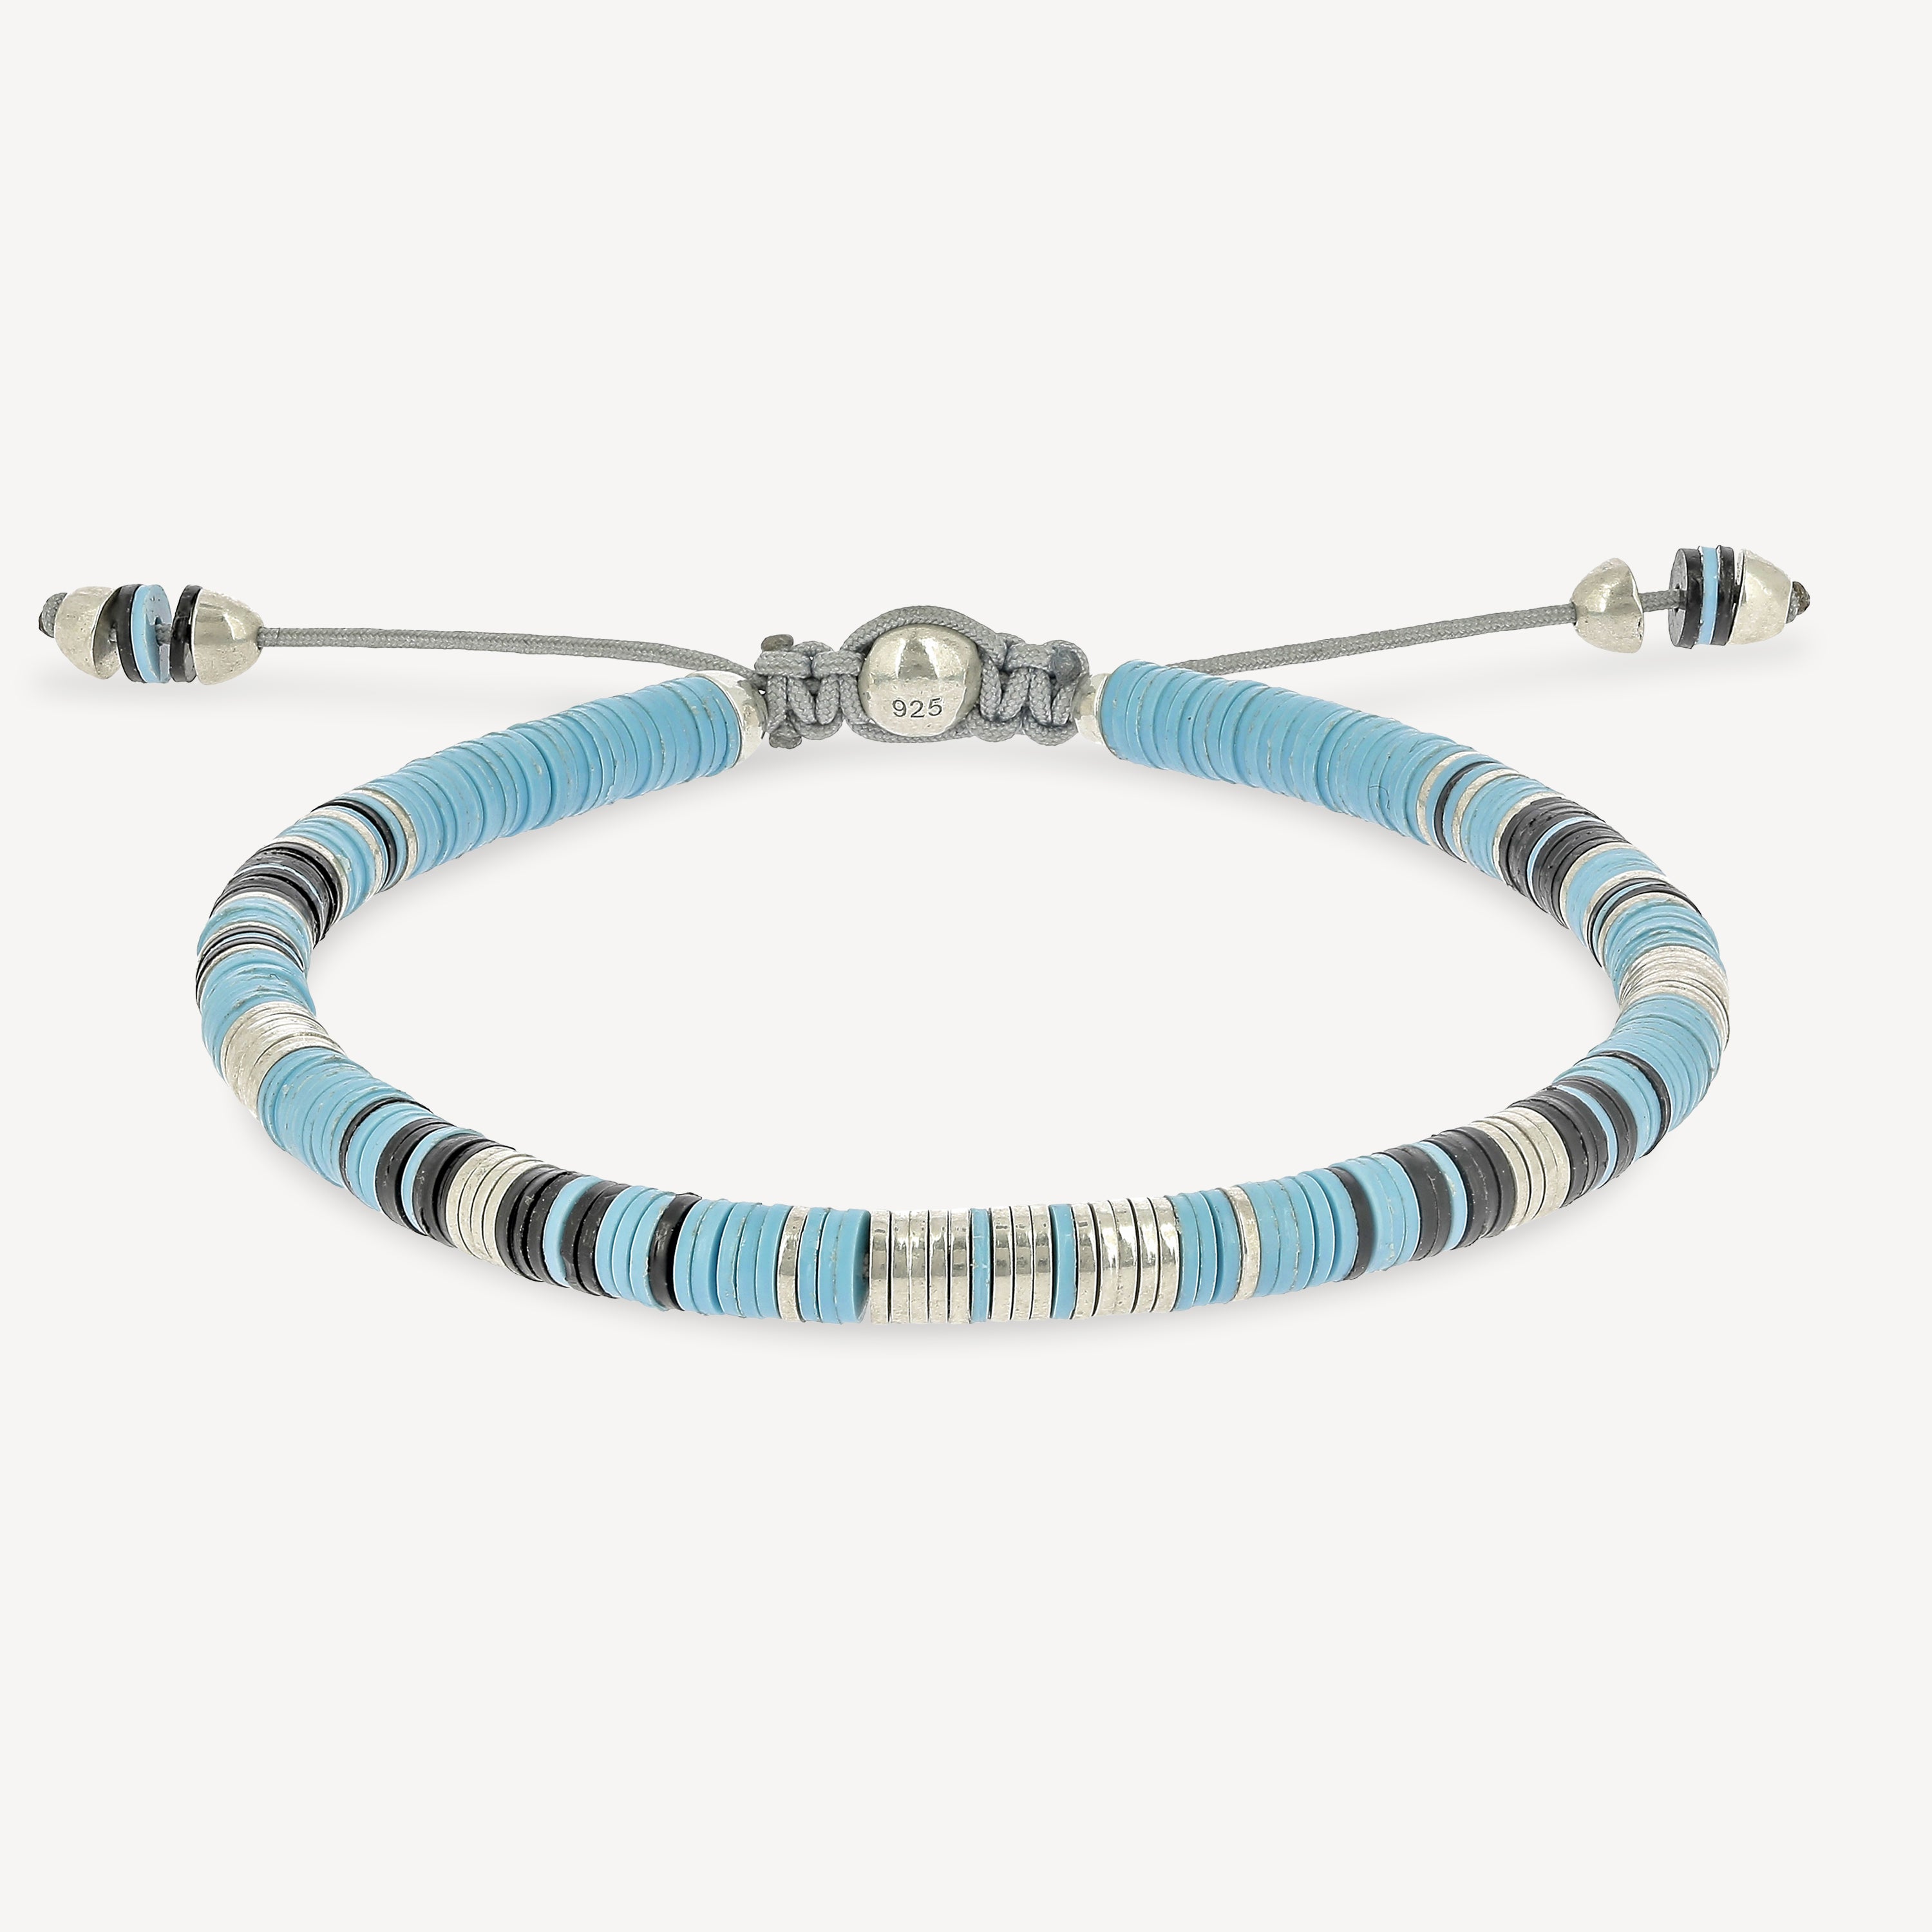 Rizon Perlen mit babyblauem Muster und silbernen Scheiben